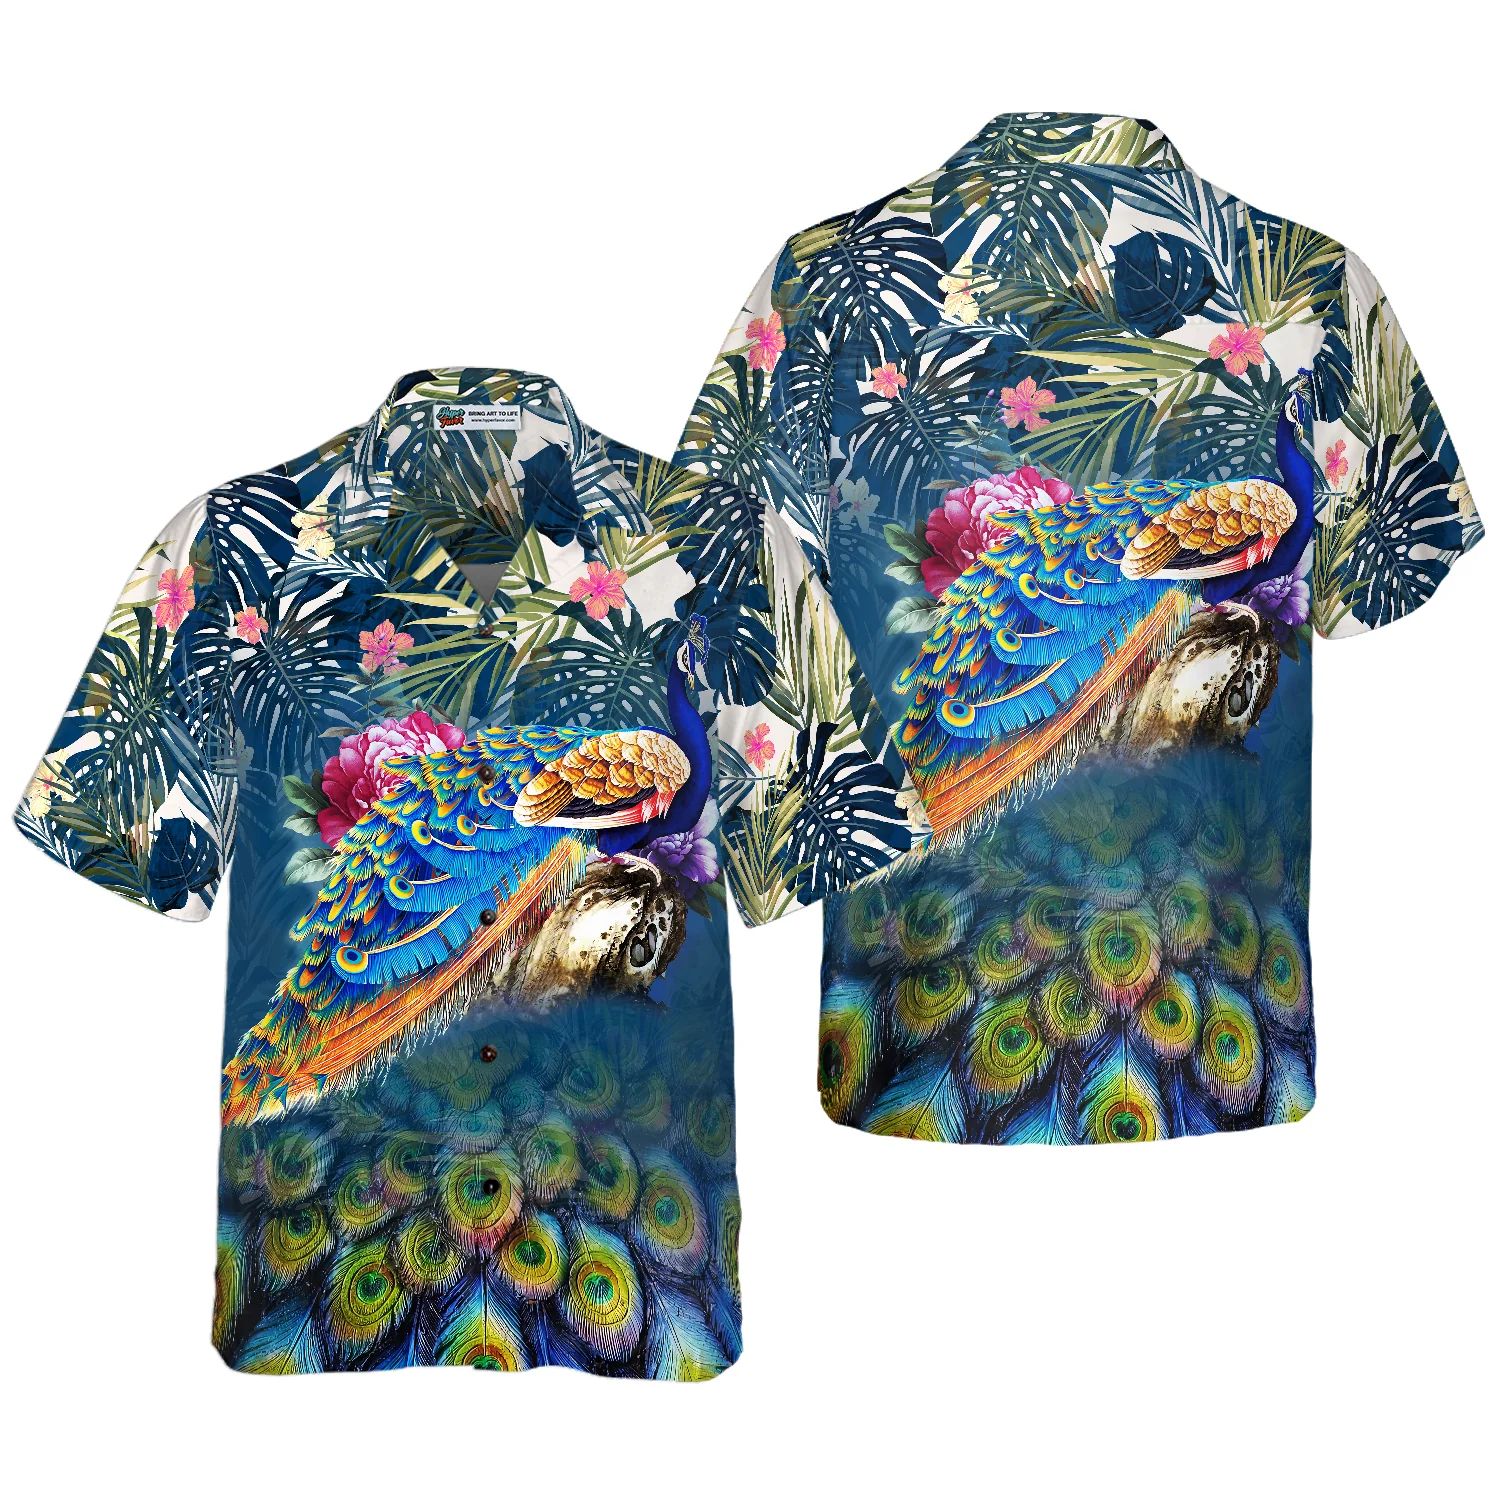 PEACOCK Hawaiian Shirt Aloha Shirt For Men and Women